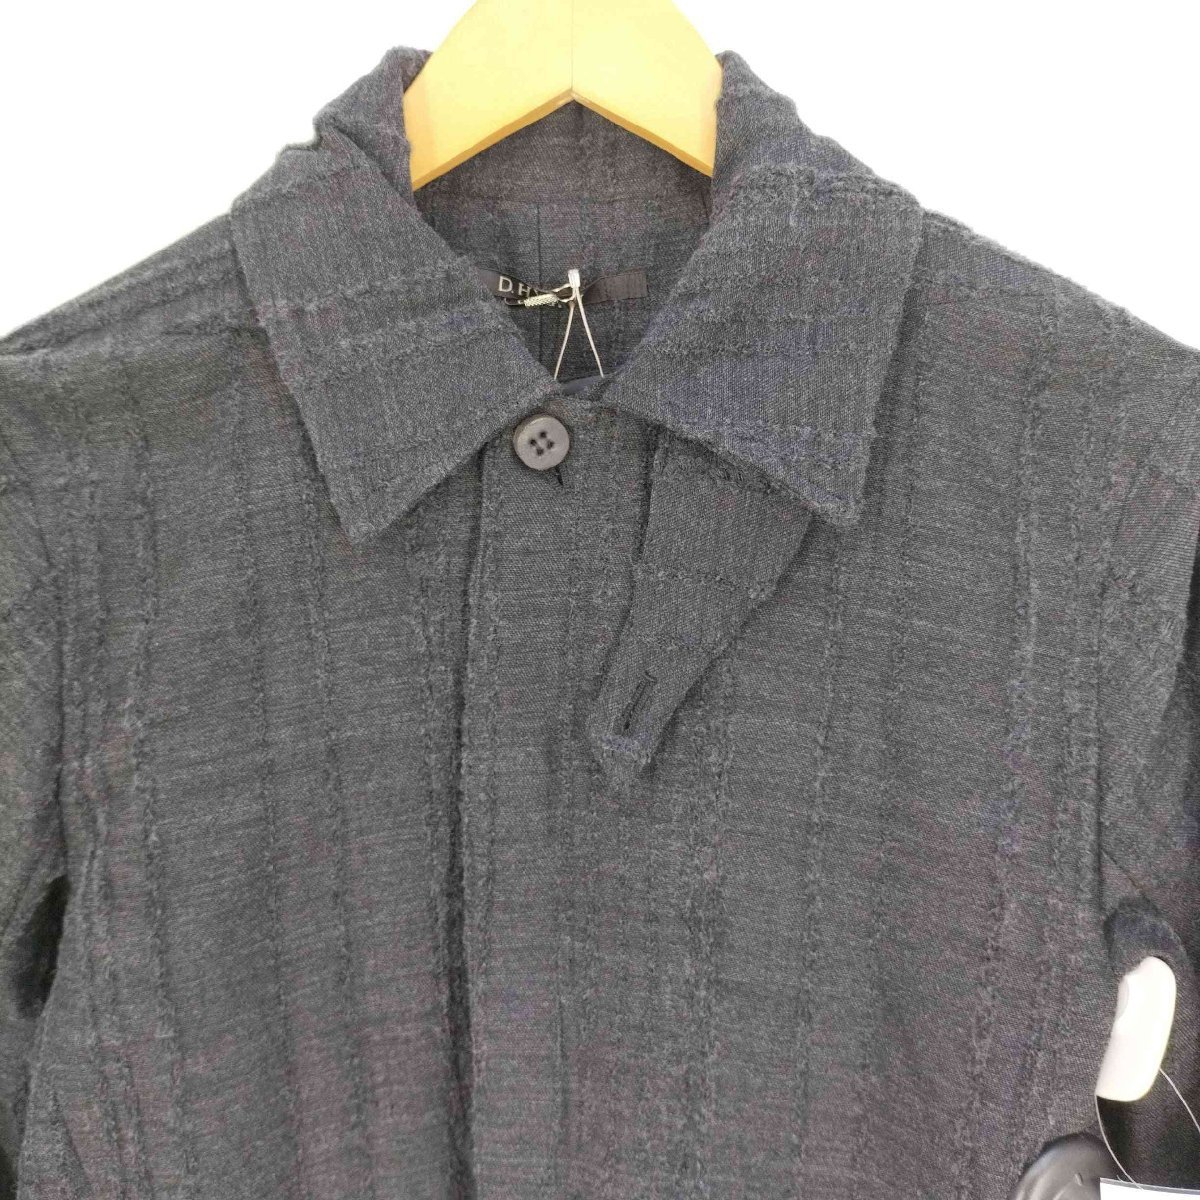 D.HYGEN(ディーハイゲン) Wool Rayon Jacquard stripe jacket ウー 中古 古着 0205_画像3